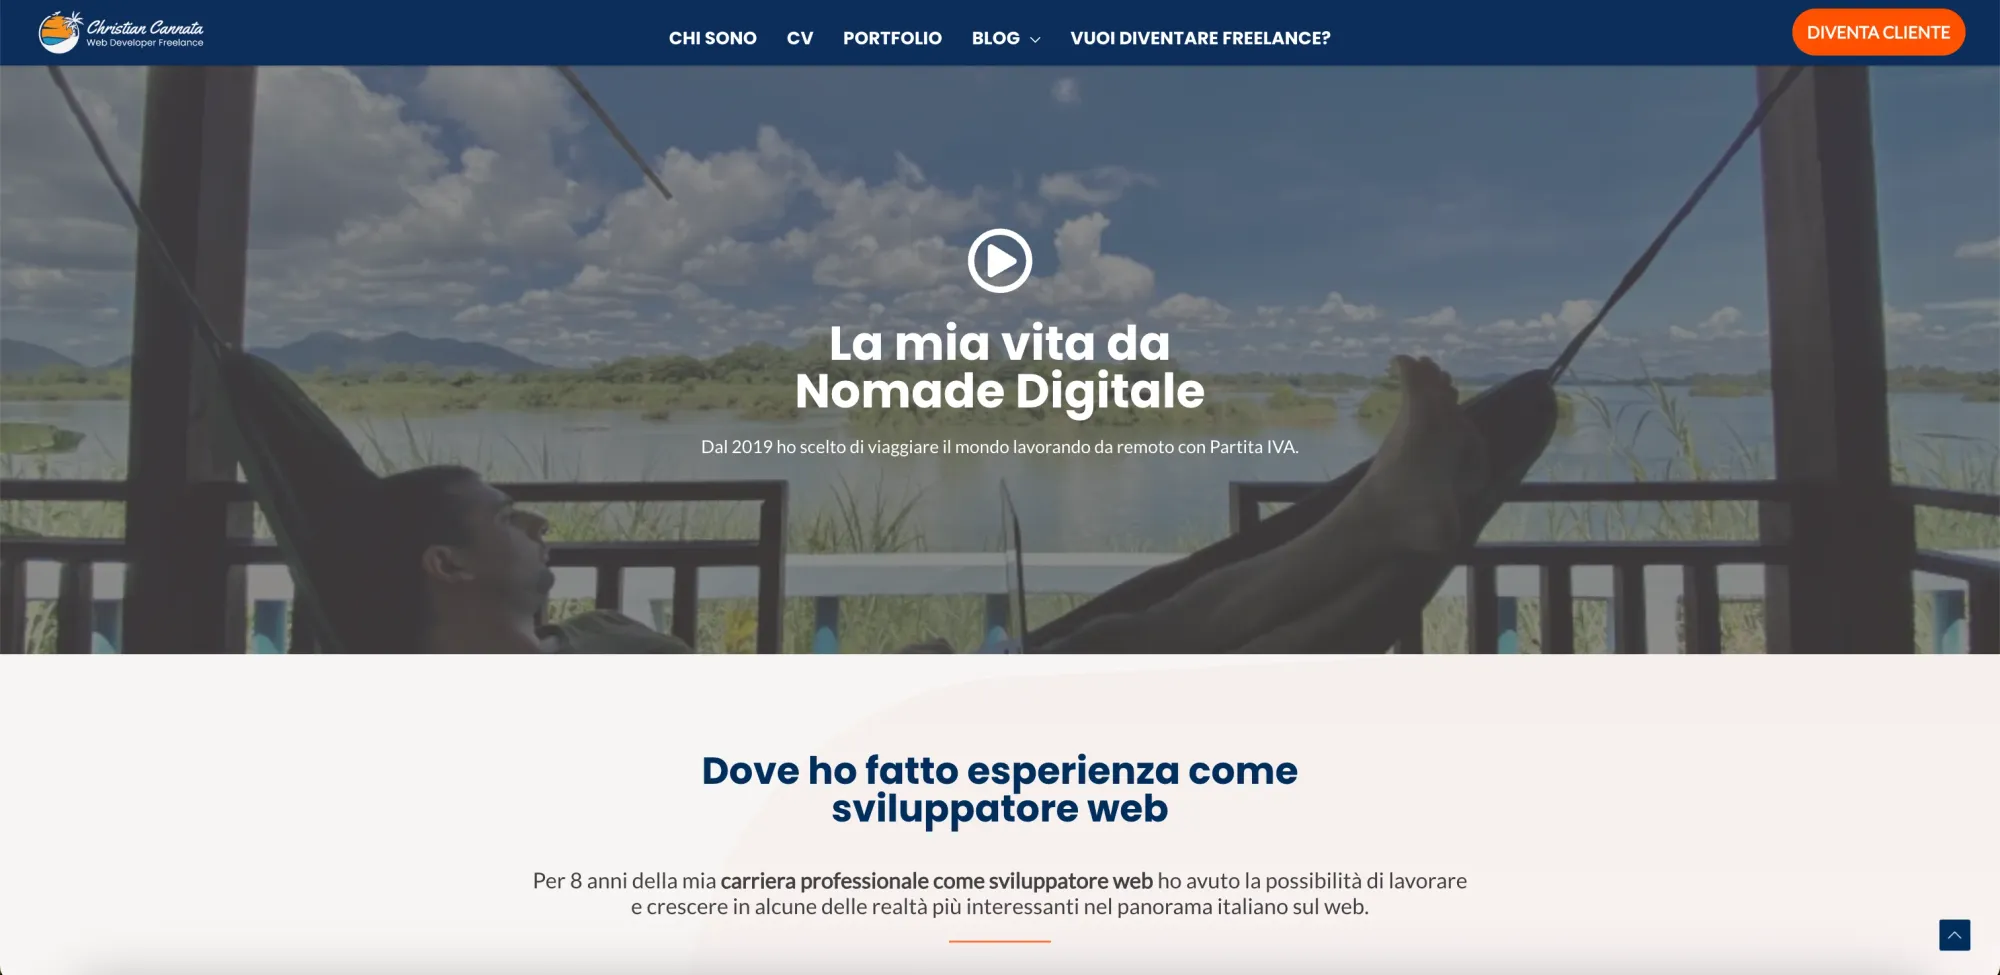 christiancannata.com, un blog di un nomade digitale italiano